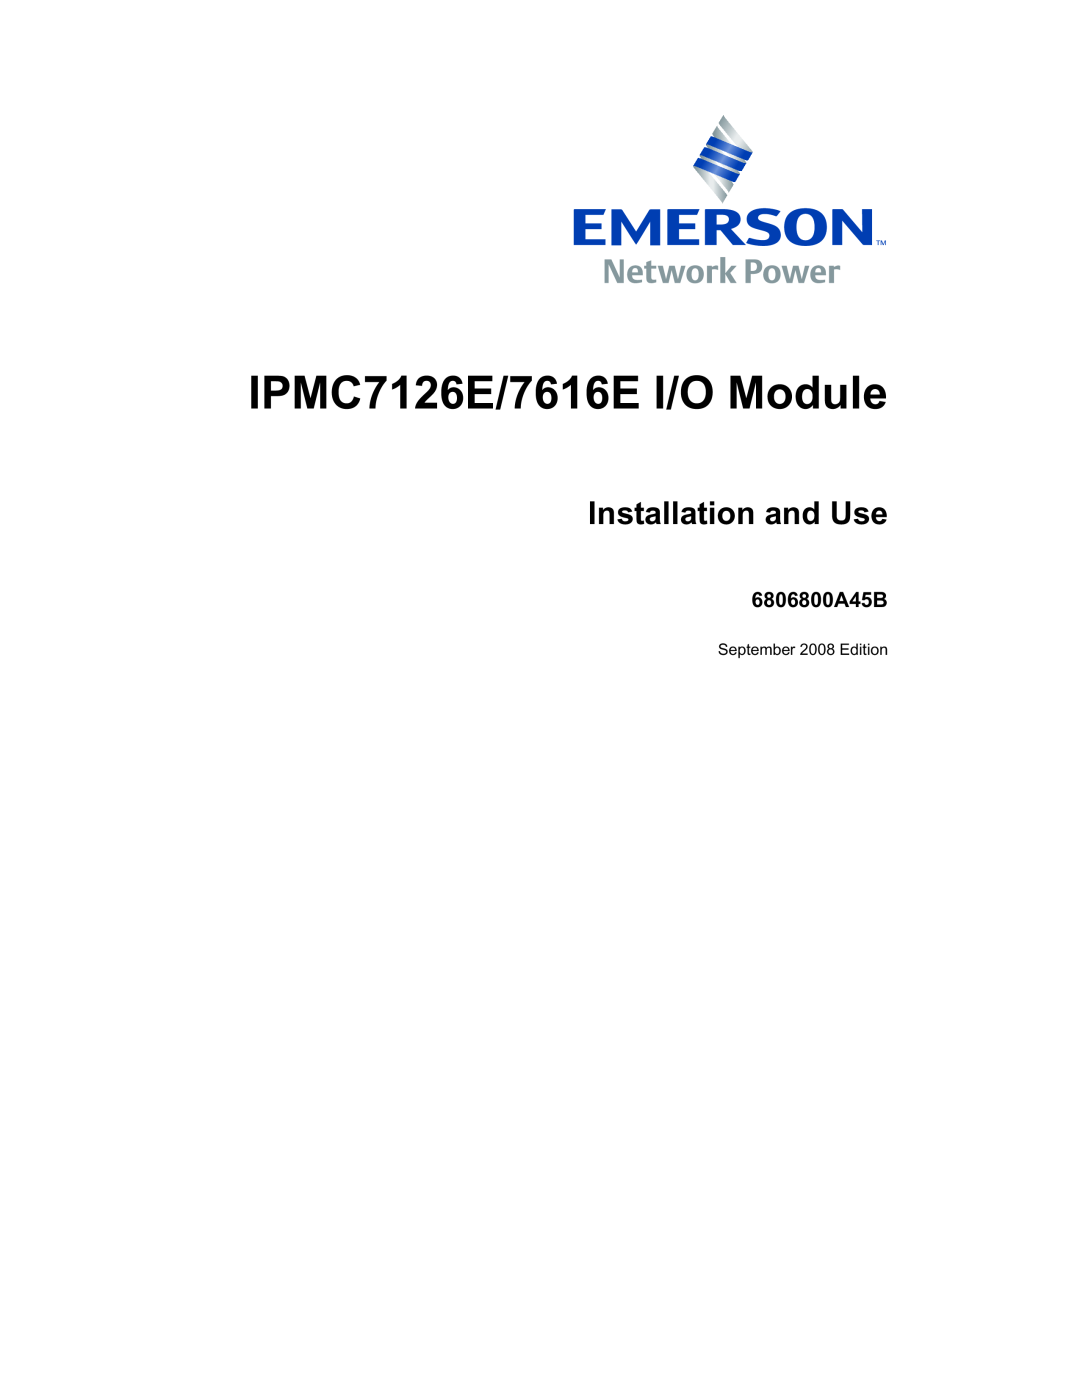 Emerson IPMC7616E manual 6806800A45B, IPMC7126E/7616E I/O Module, Installation and Use 